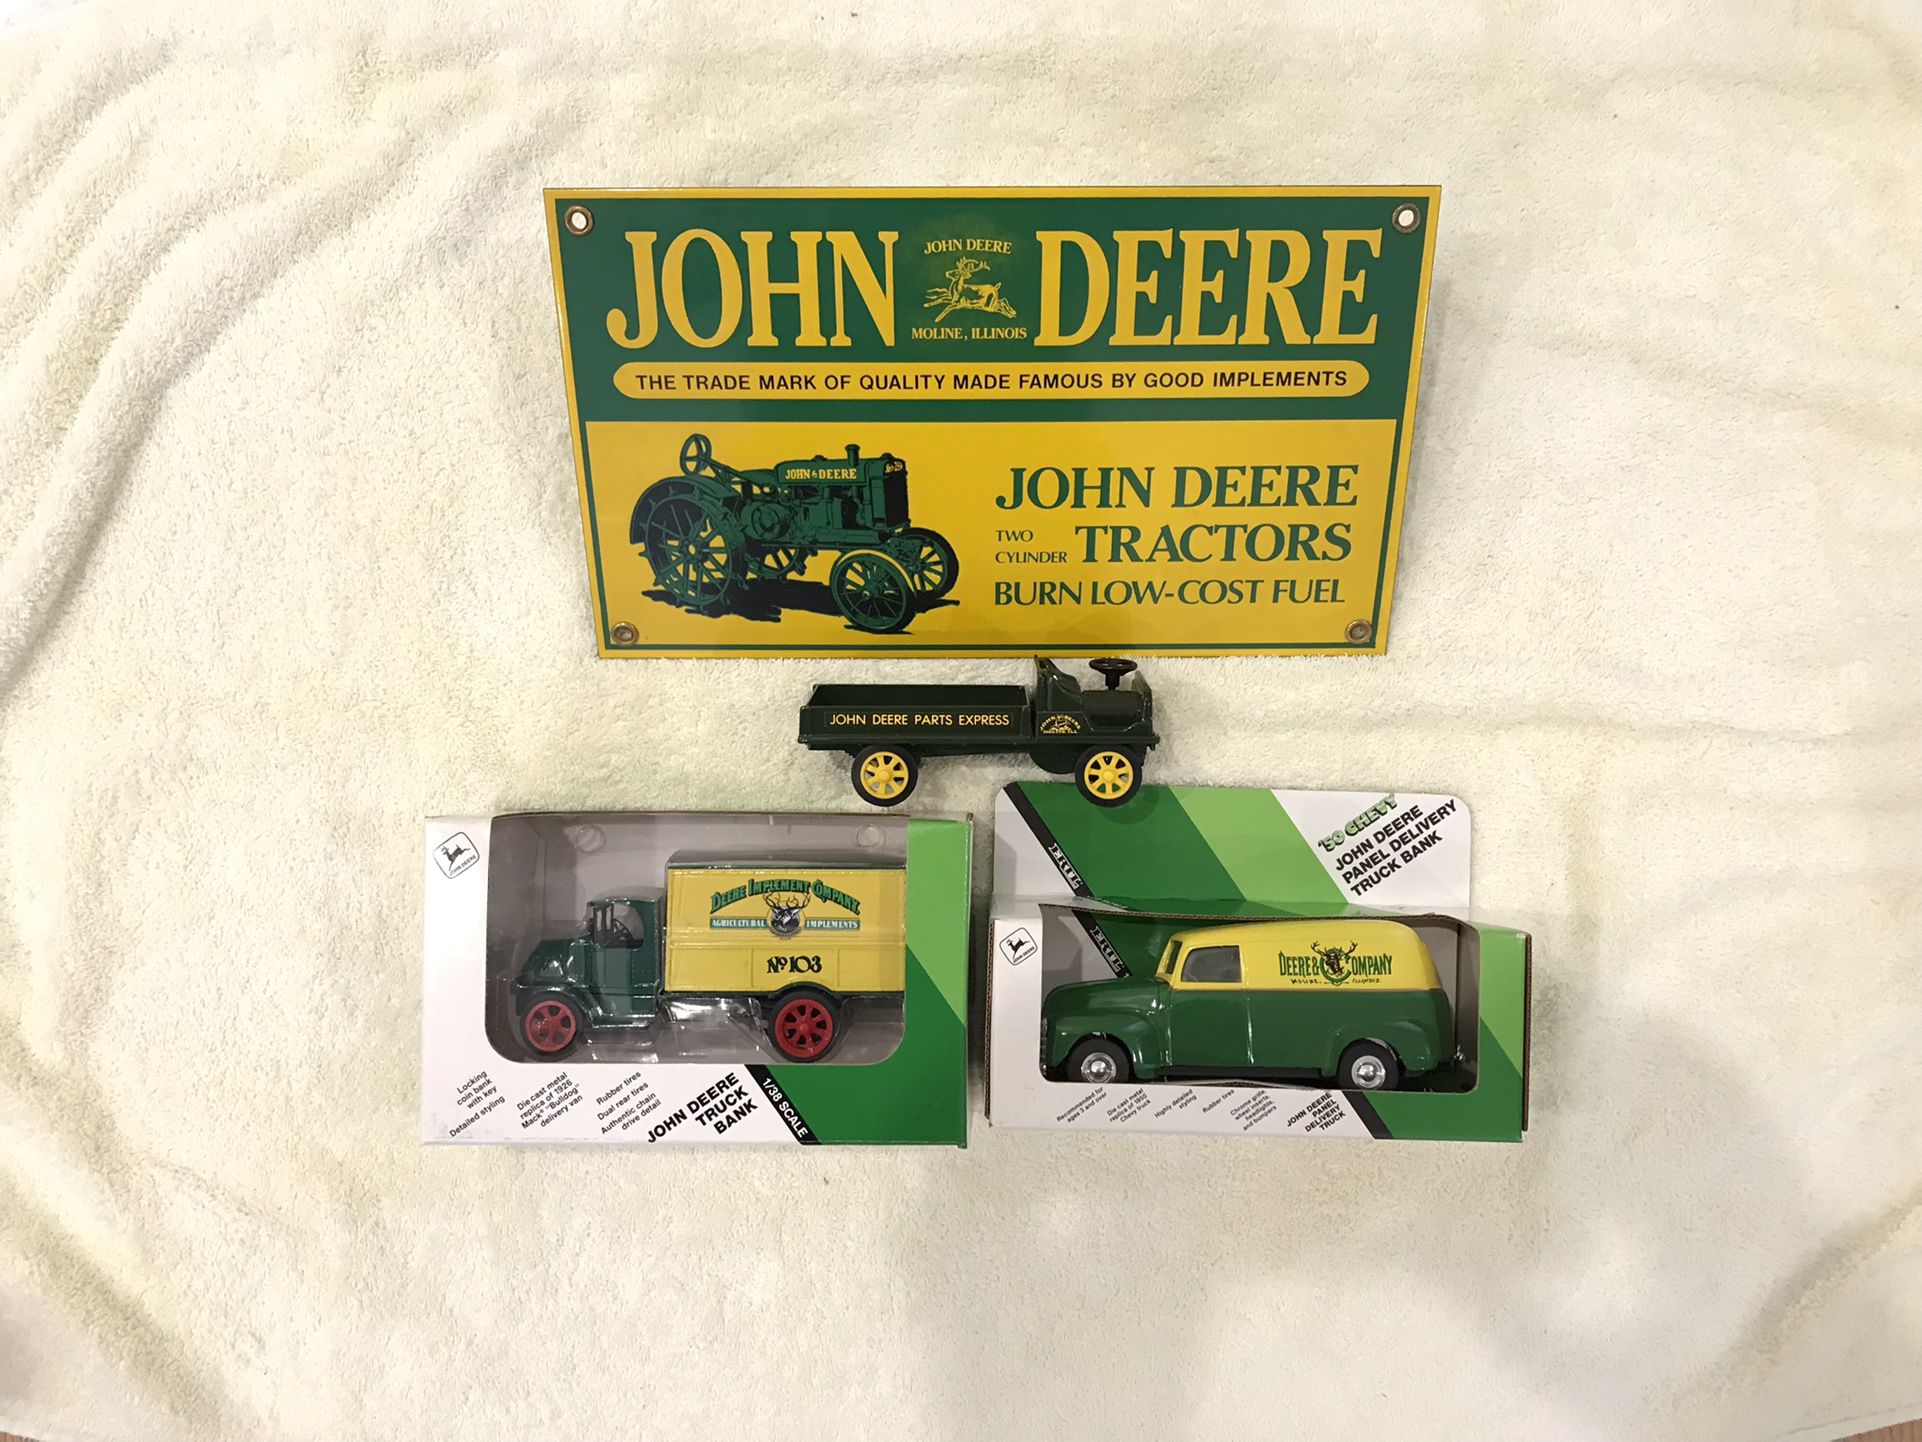 John Deere Collectibles